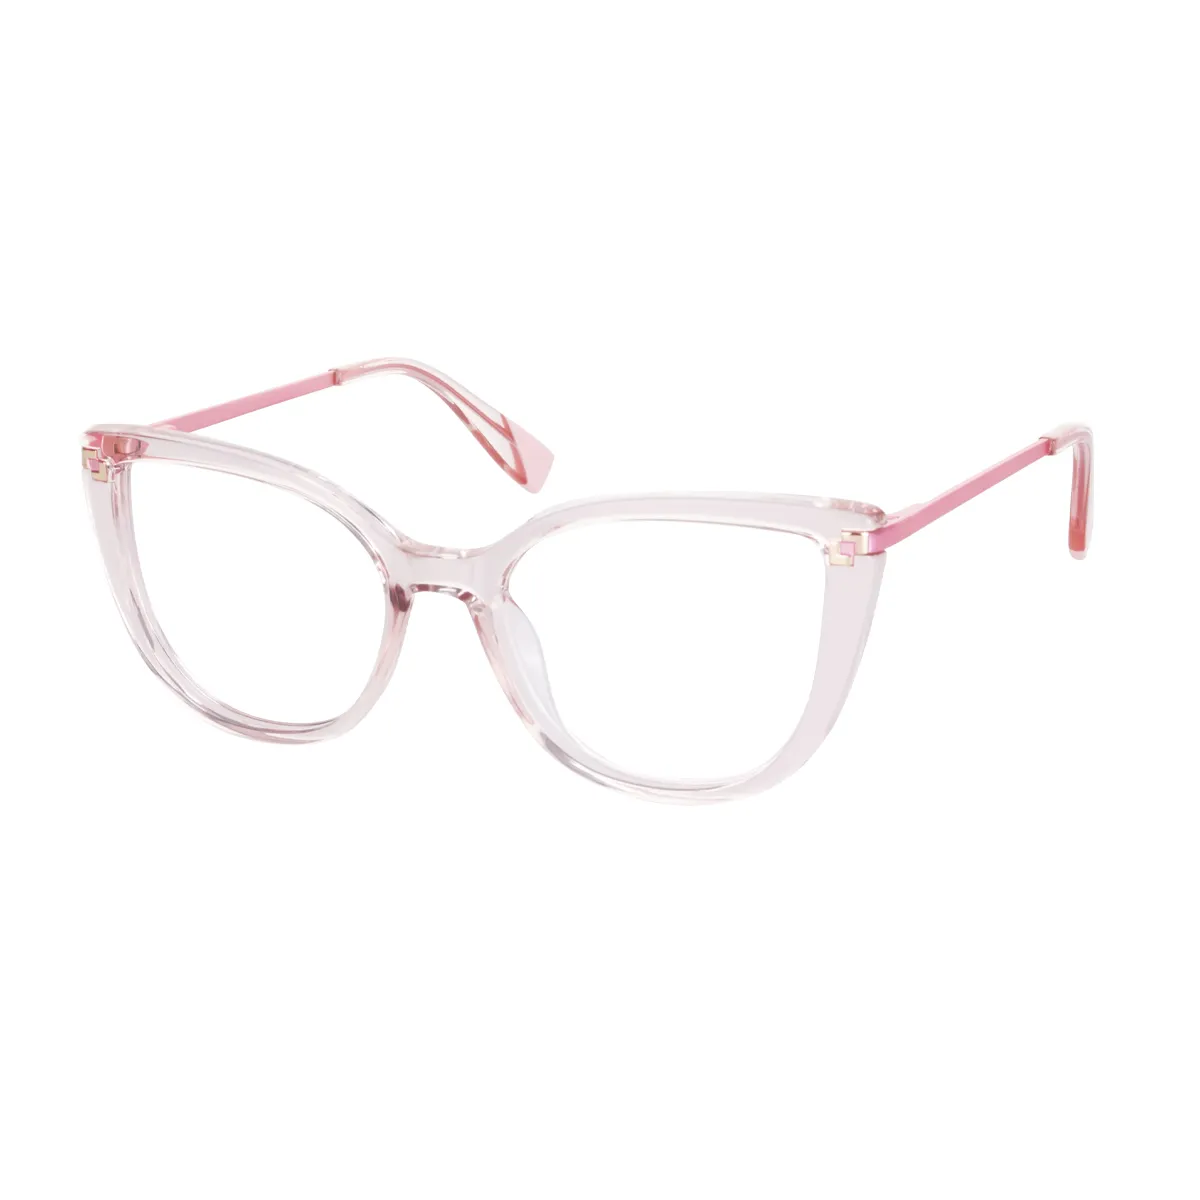 Julian - Cat-eye Pink Translucent Glasses for Women